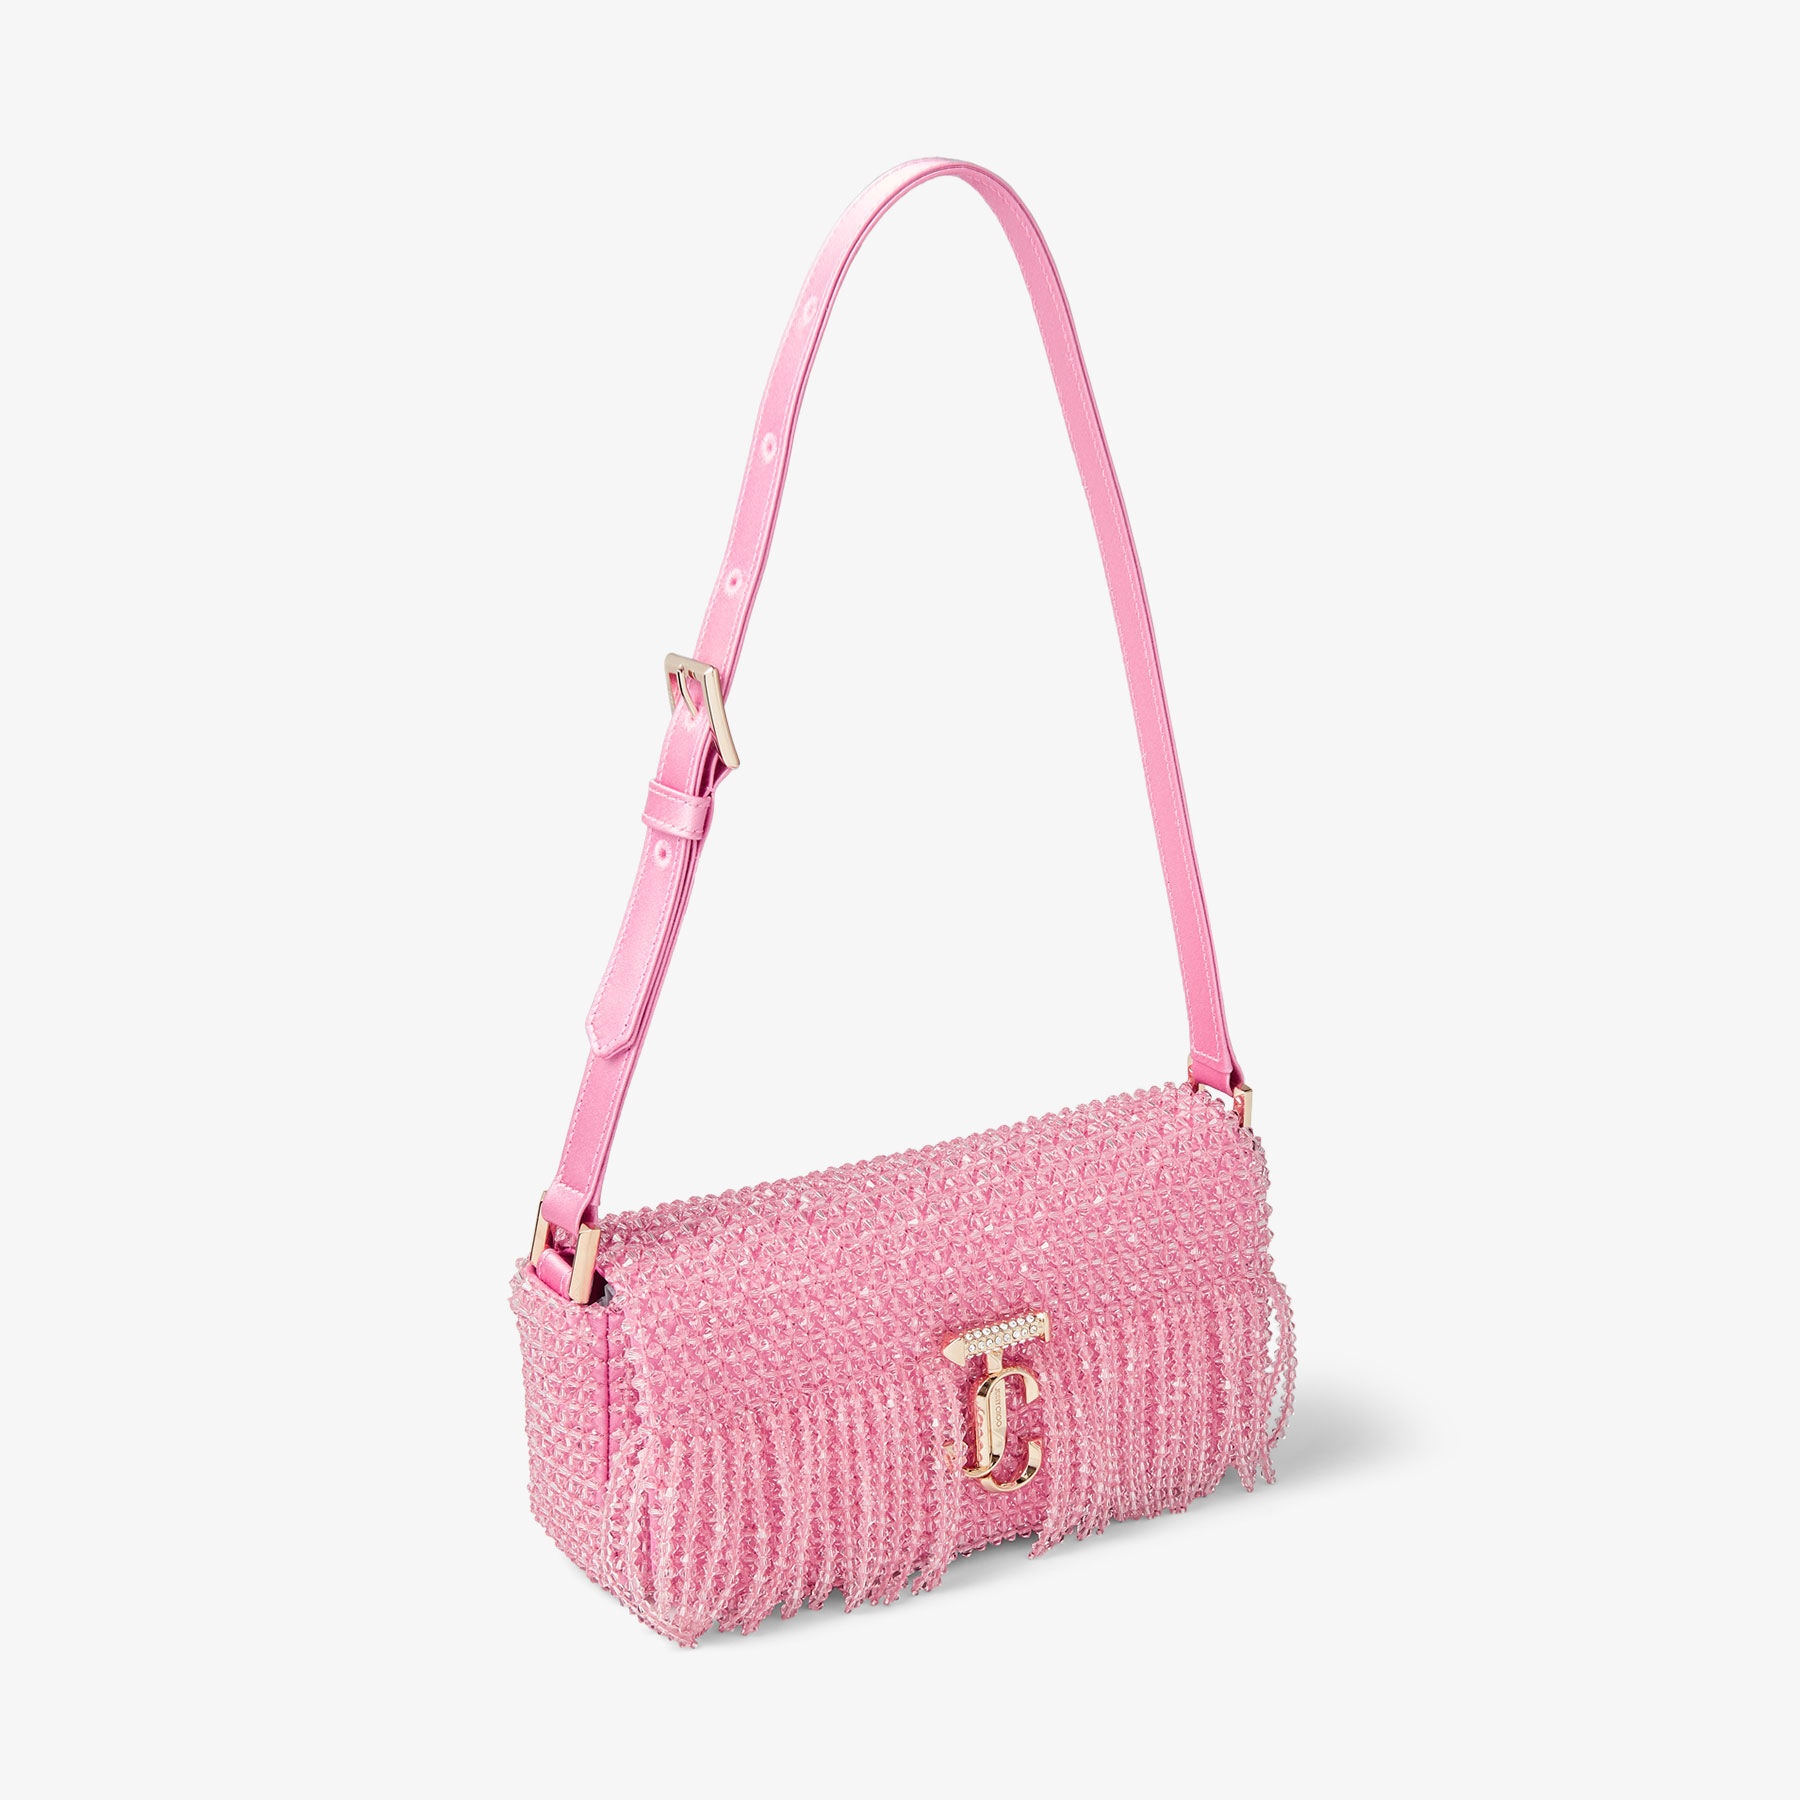 Avenue Mini Shoulder
Candy Pink Satin Mini Shoulder Bag with Crystal Fringe - 6